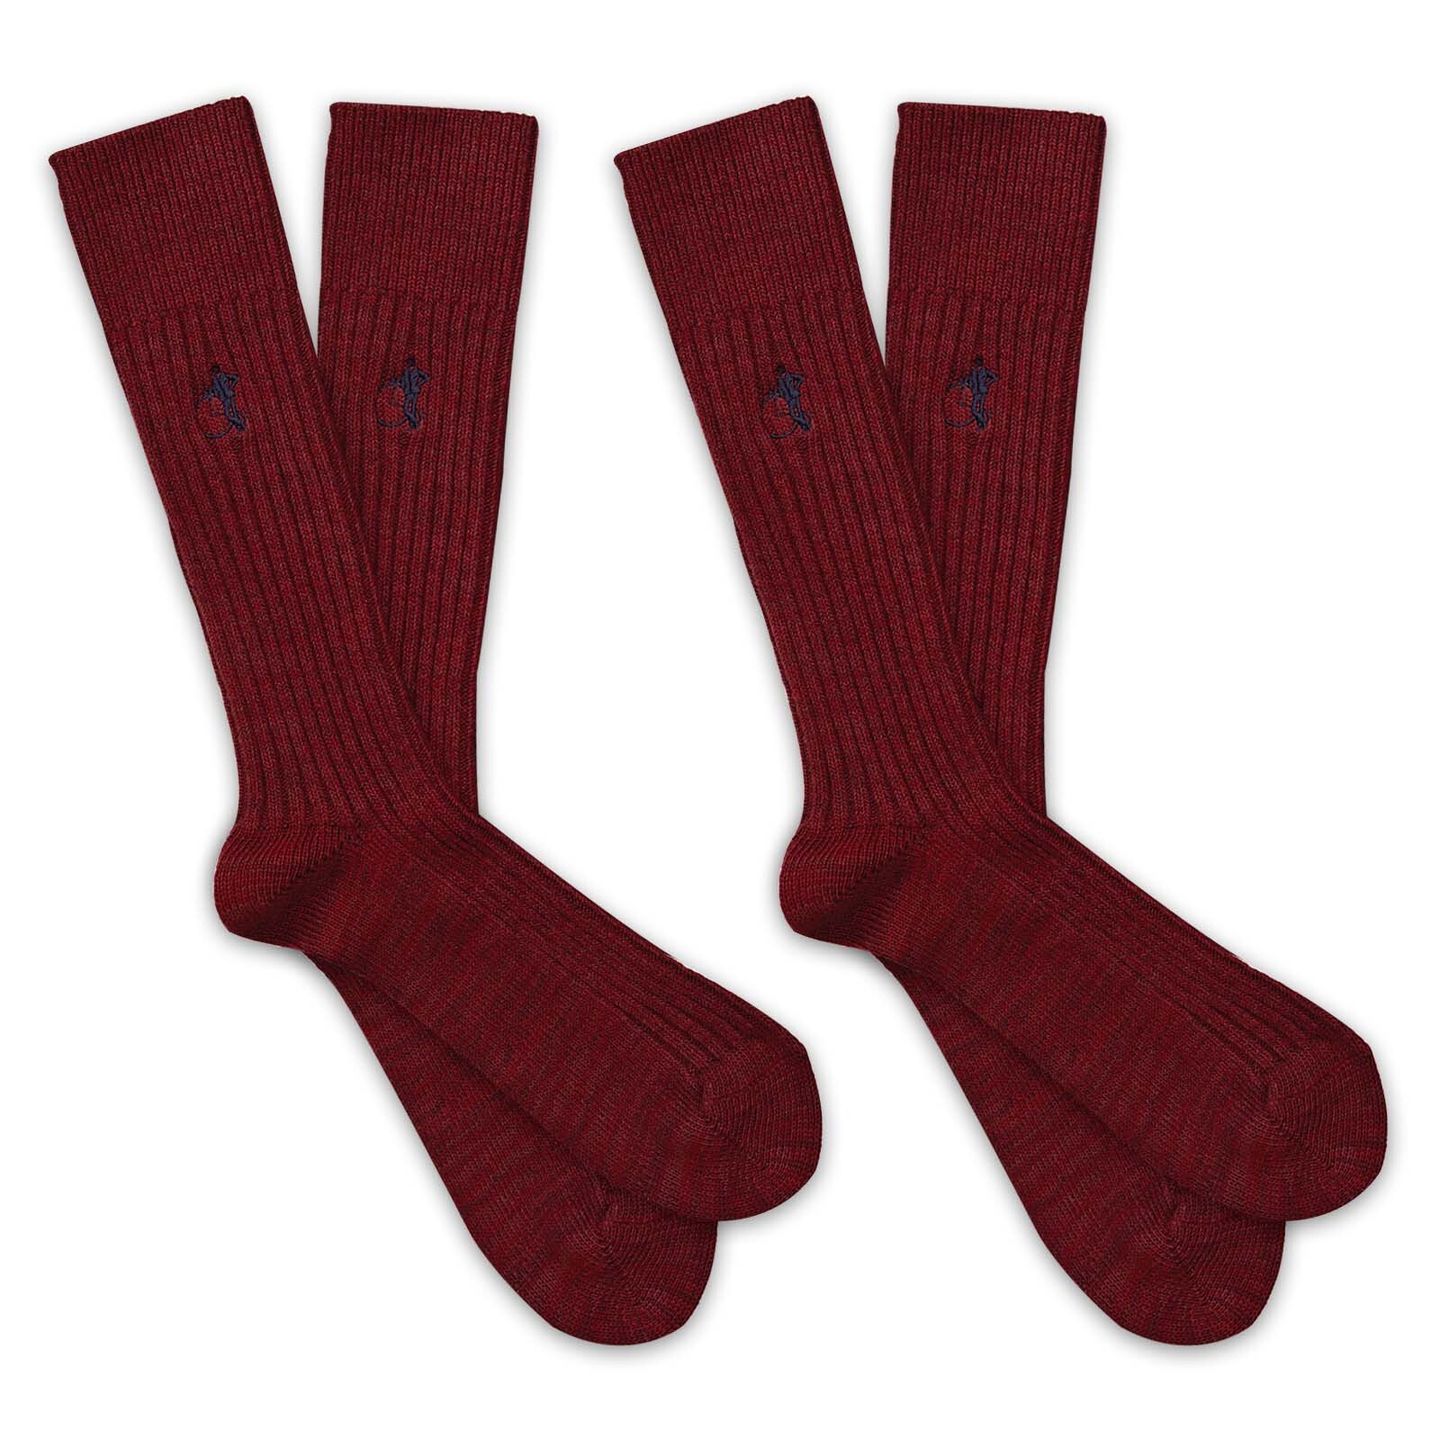 2 pairs of boot burgundy socks for men